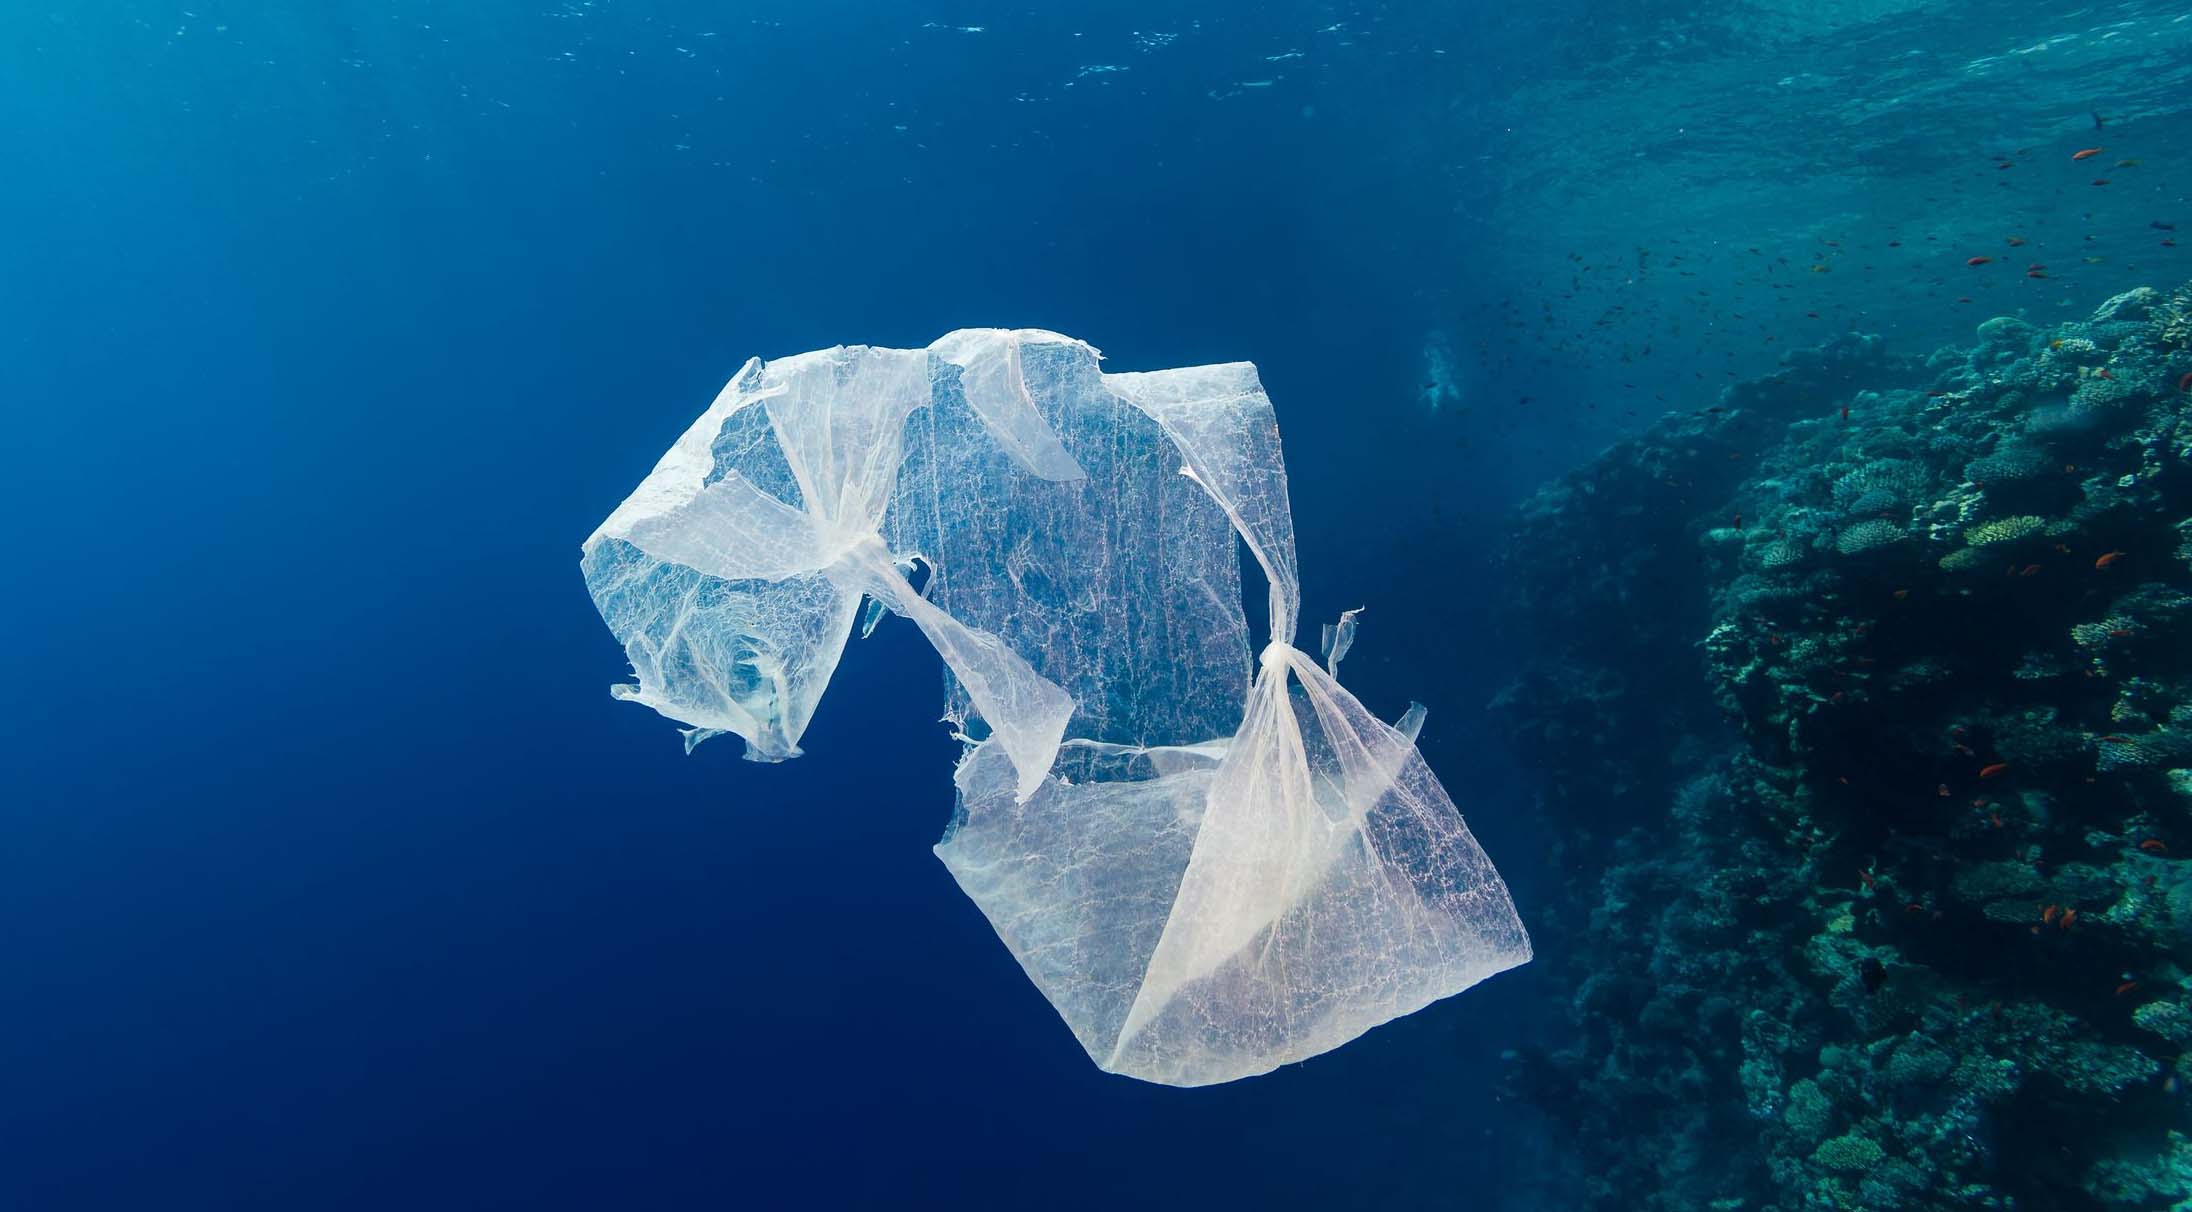 El Sumario - La compañía The New Plastics Economy realizó un video para explicar que en el 2050 habrá plástico en lugar de peces debido a la contaminación